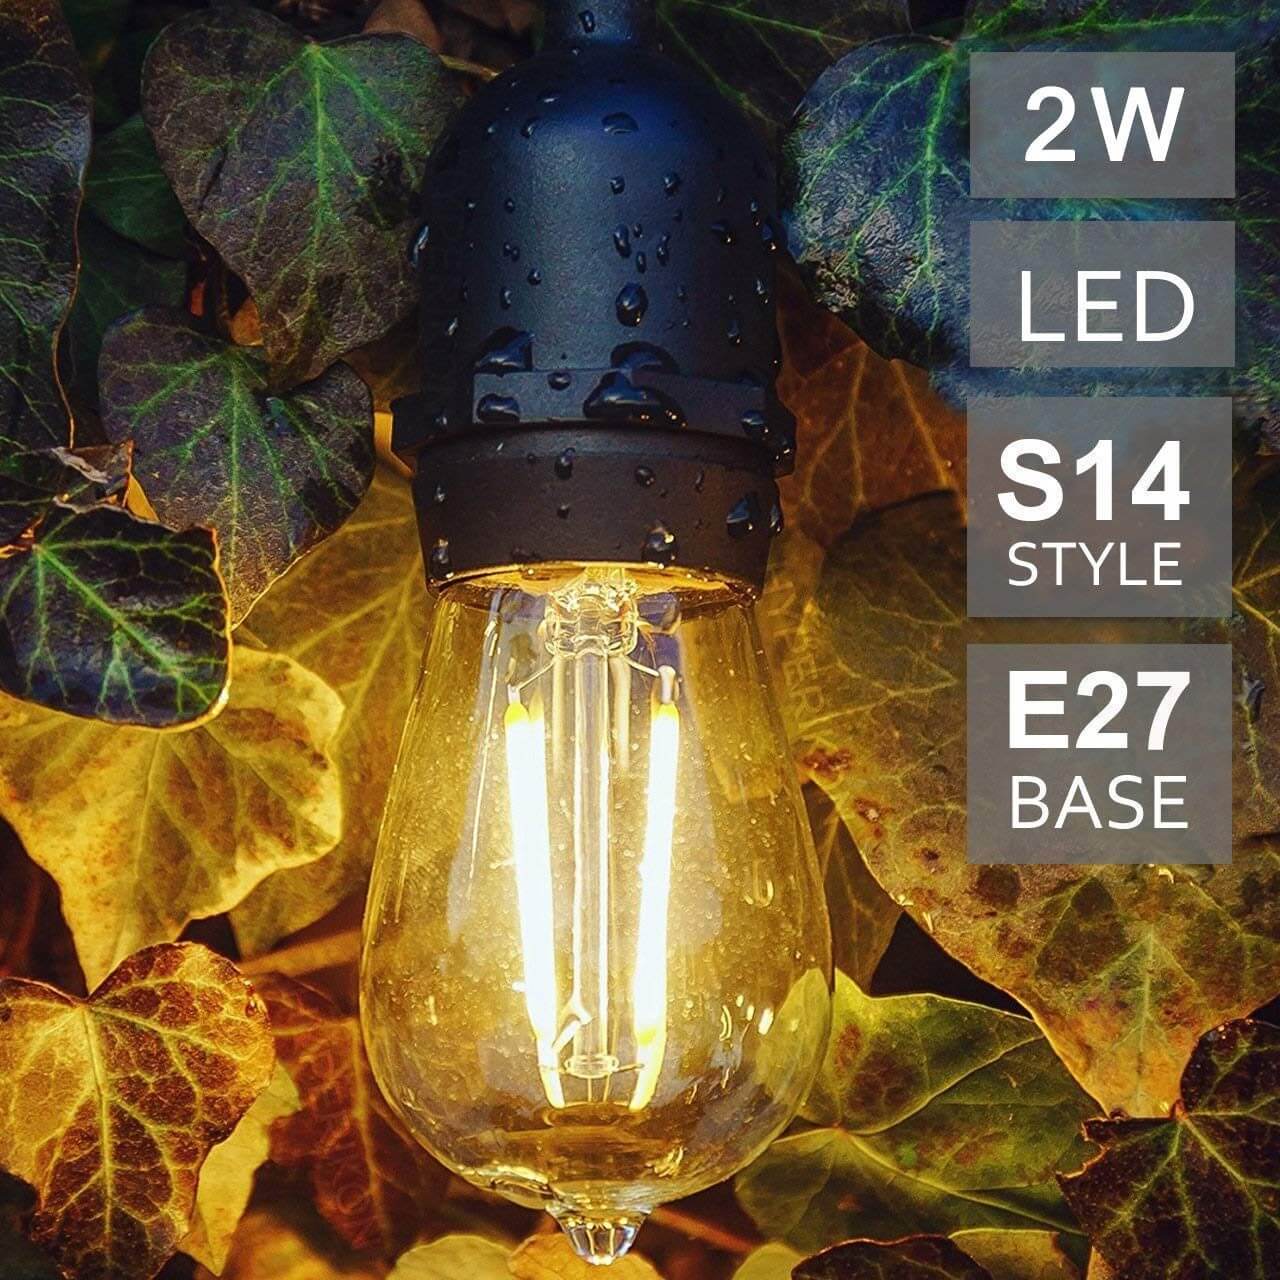 Festoon Light String Lights 5M-5 bulbs - The Shopsite